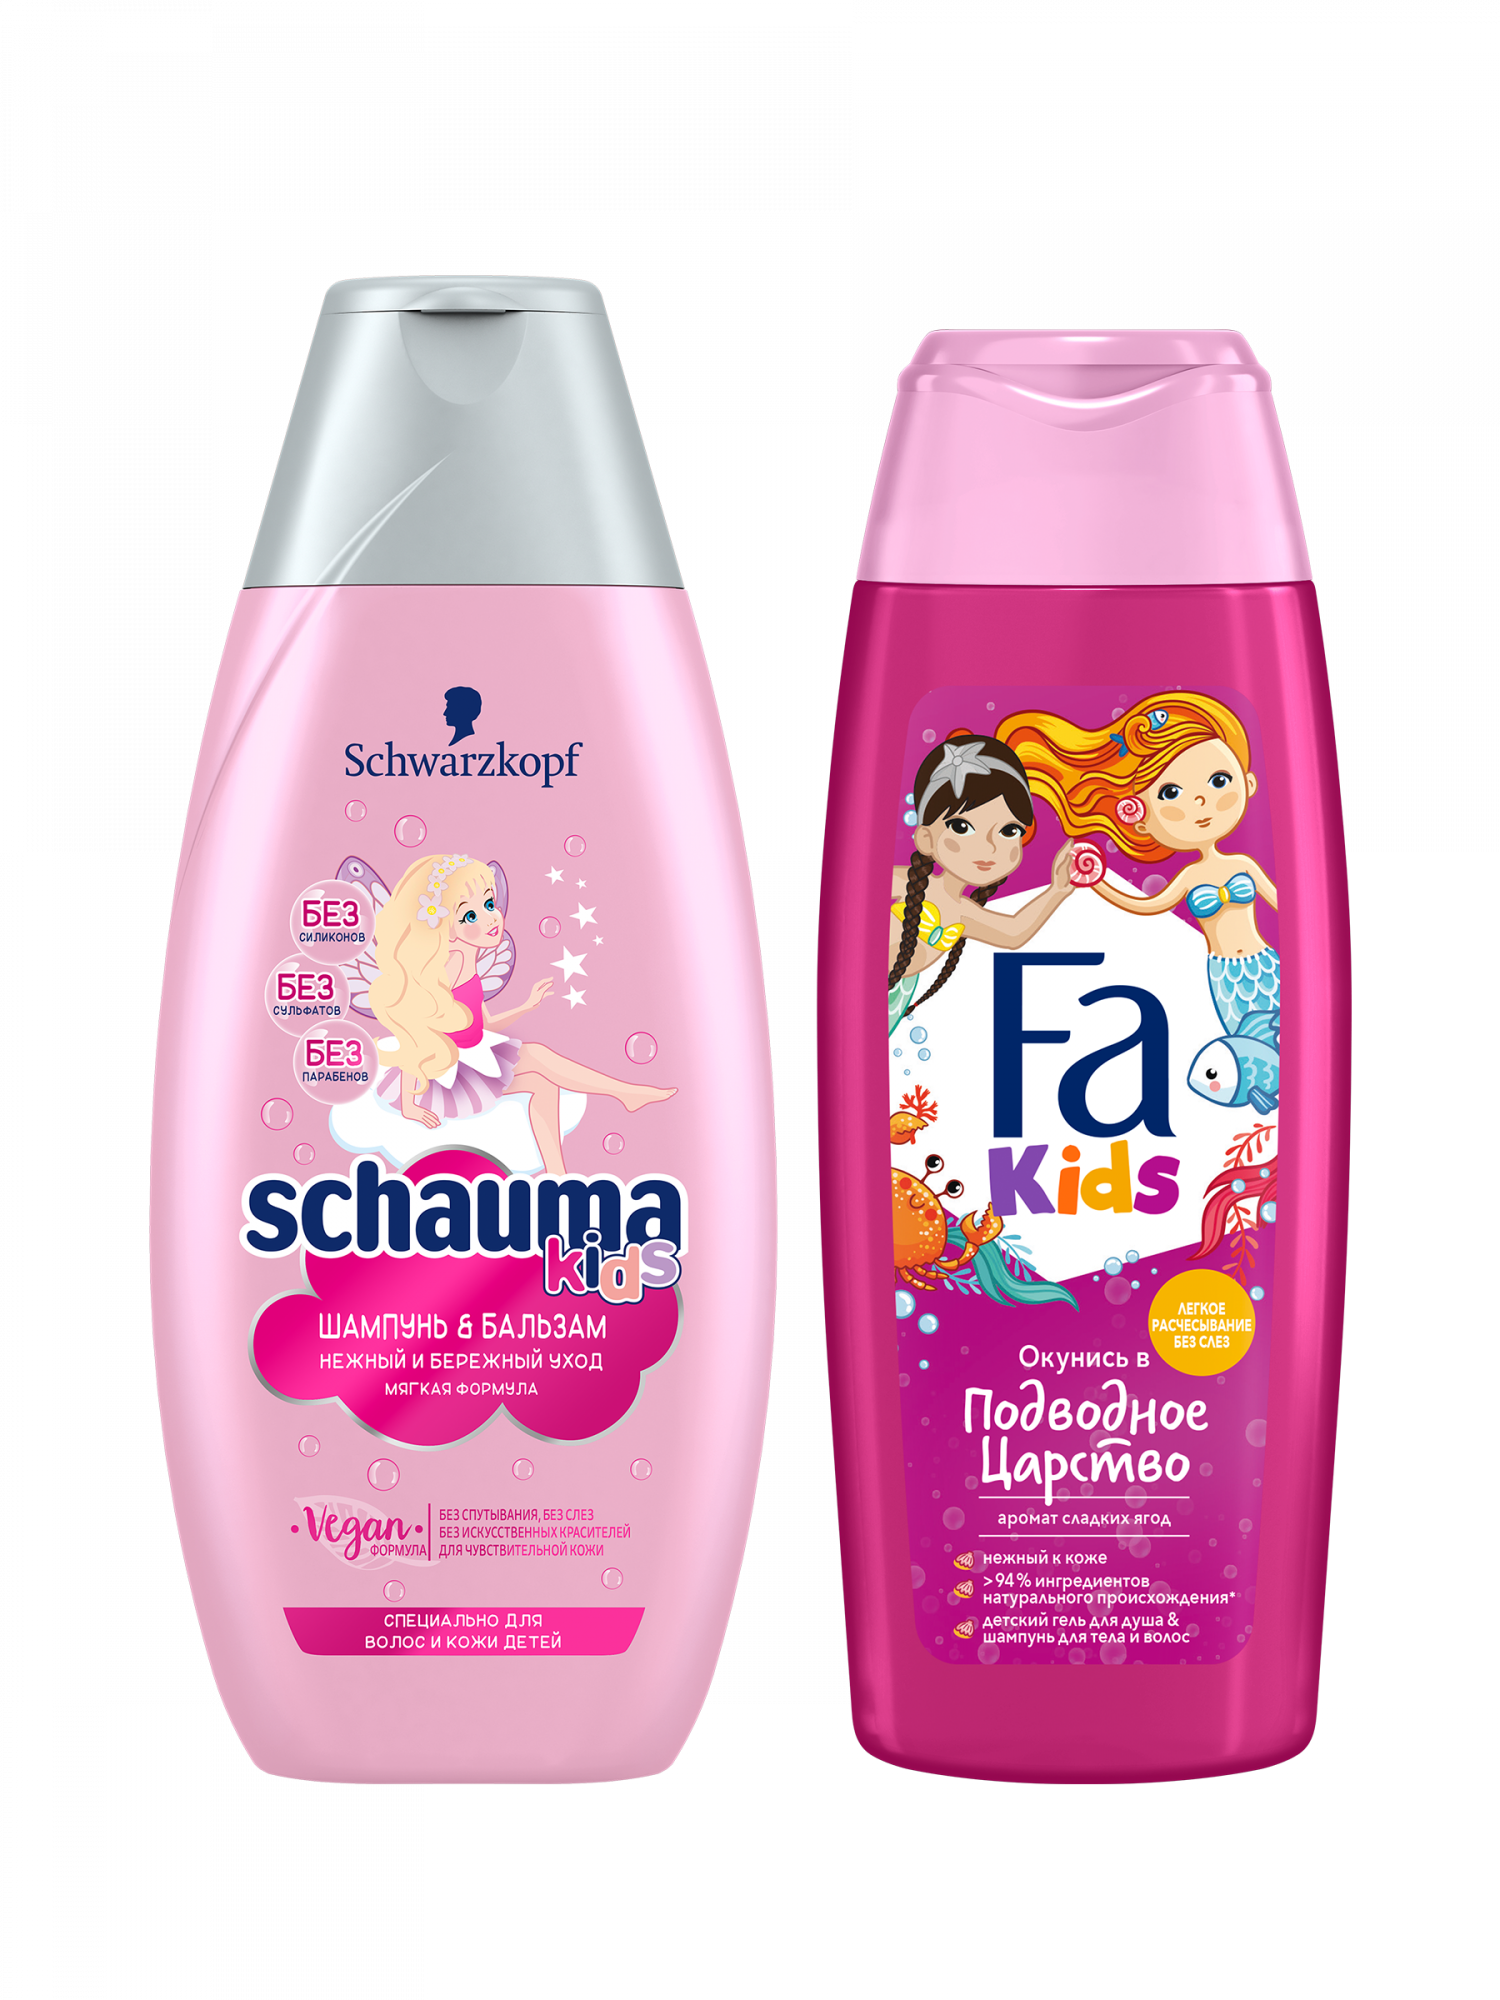 Подарочный набор Шампунь Schauma + гель для душа Fa Kids Girls